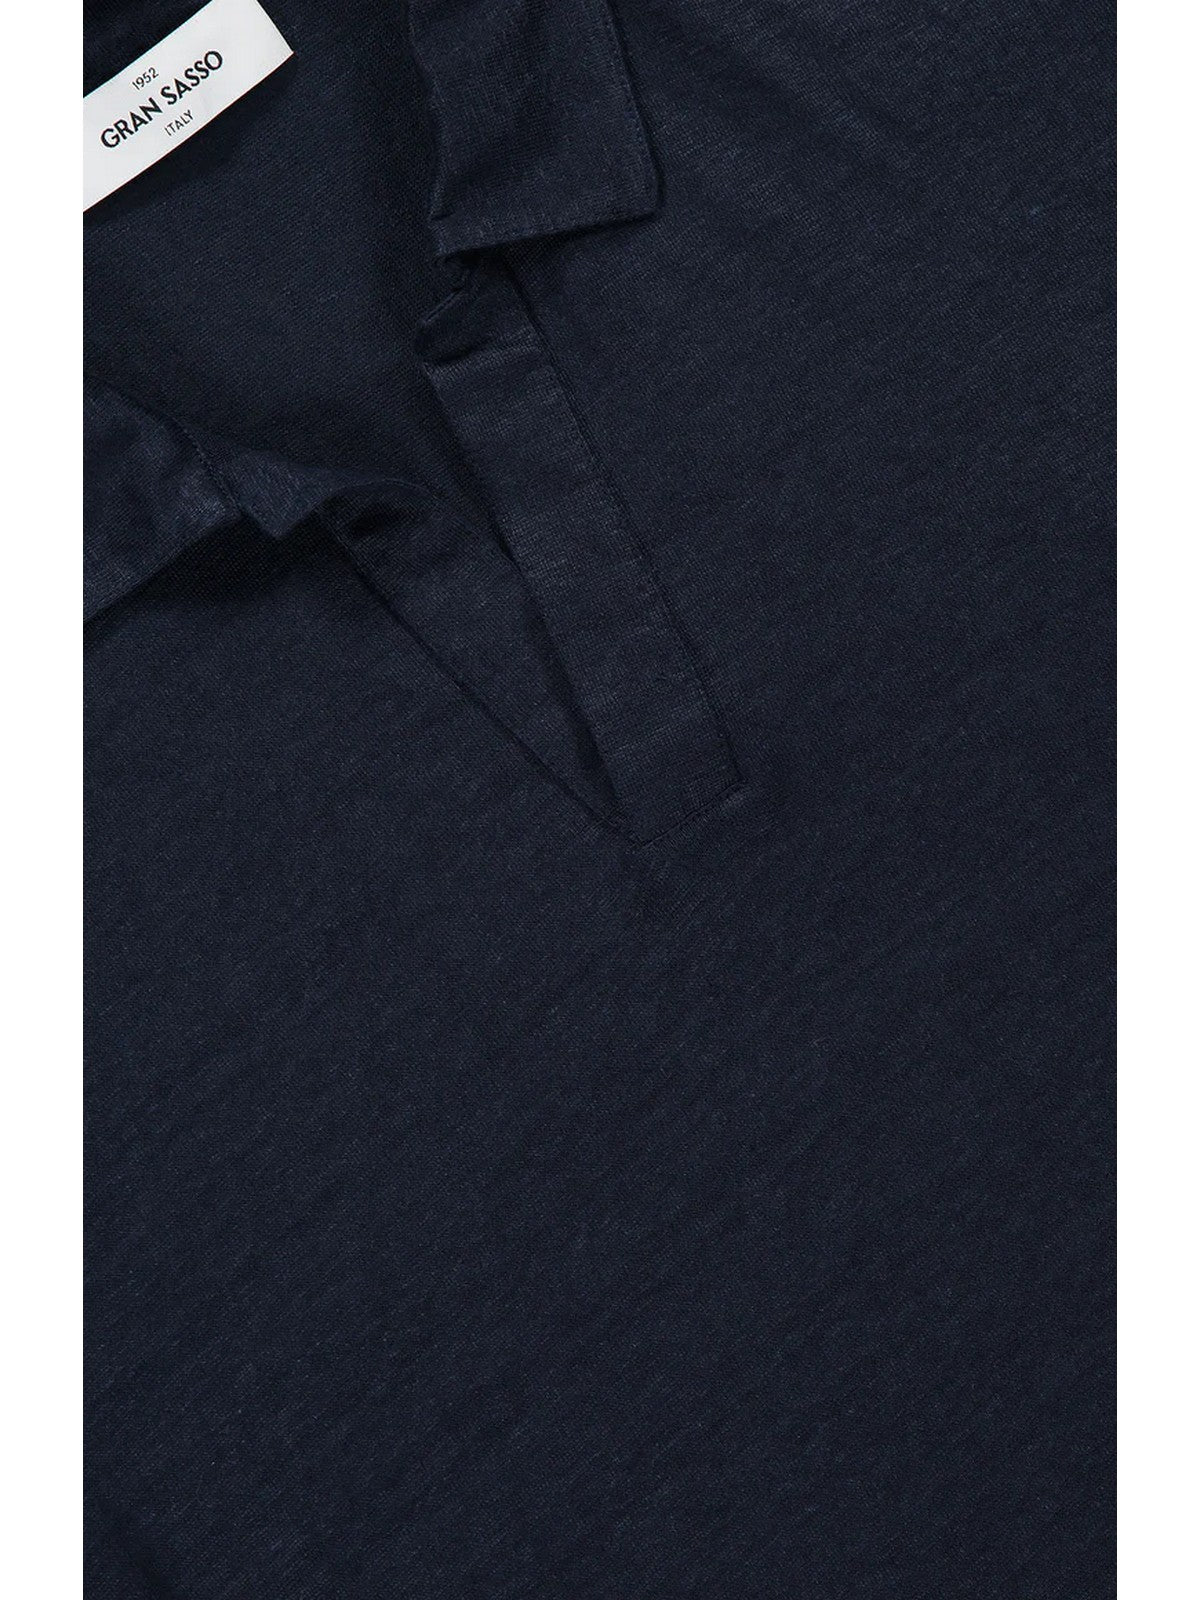 GRAN SASSO T-Shirt e Polo Uomo  60160/96800 306 Blu